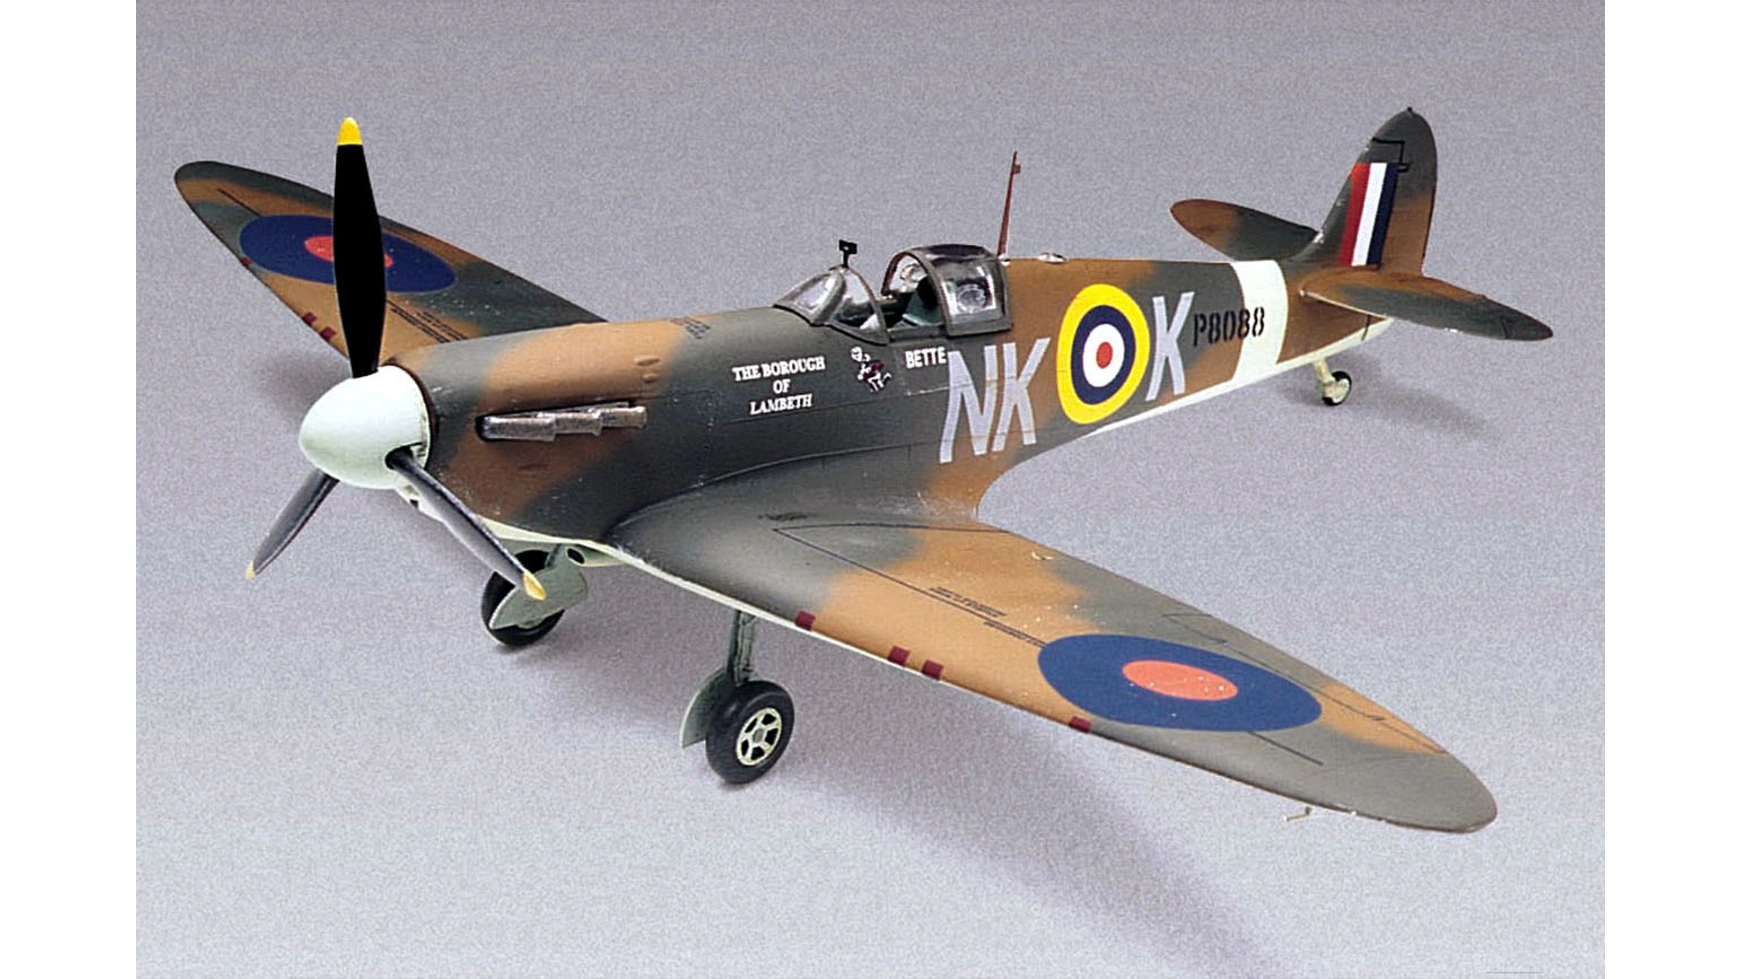 Revell Spitfire Mk-II (11/98)